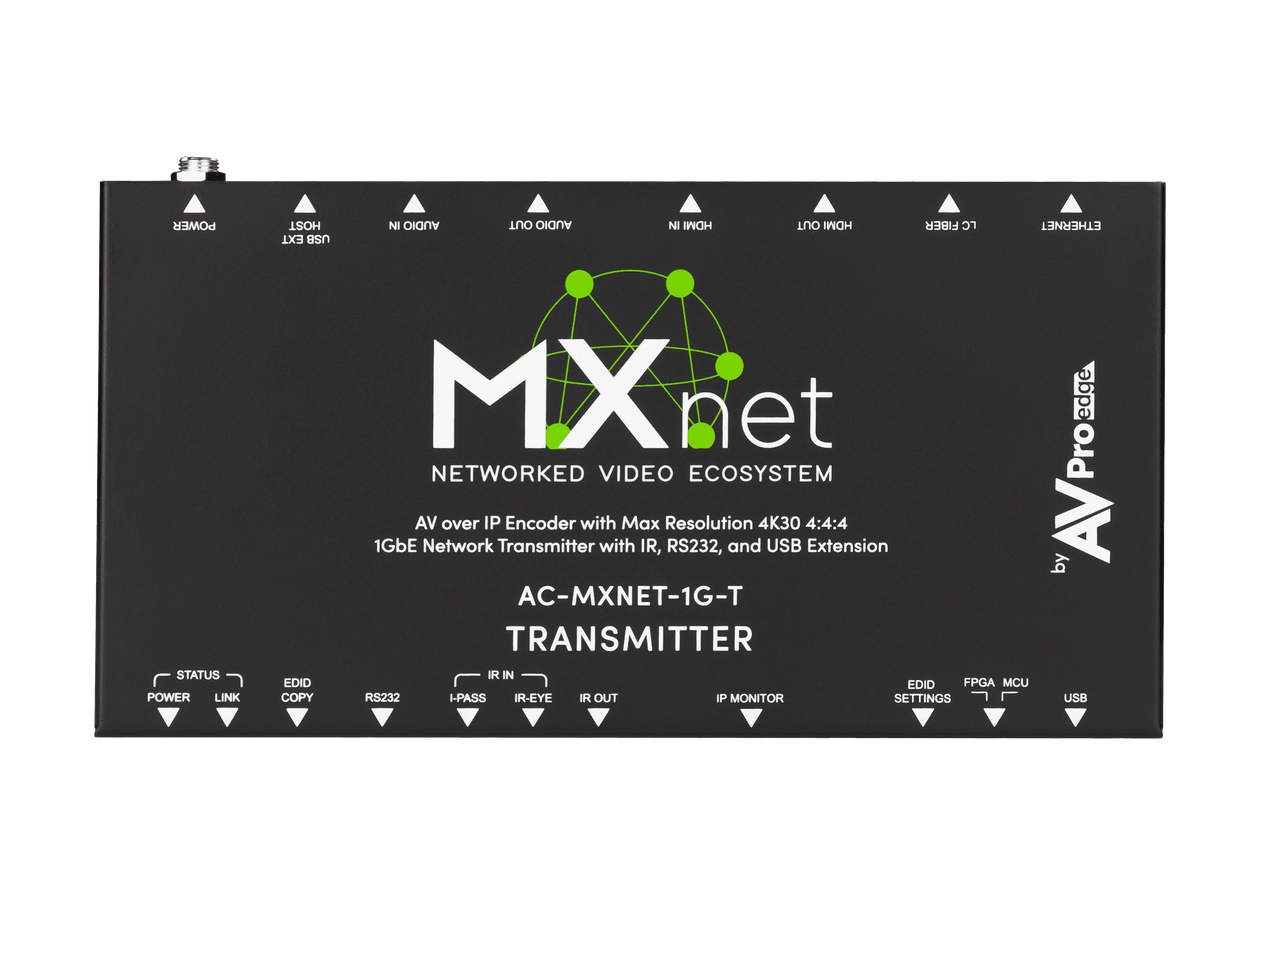 AC-MXNET-1G-E MXNet 1G Encoder/Transmitter Device by AVPro Edge